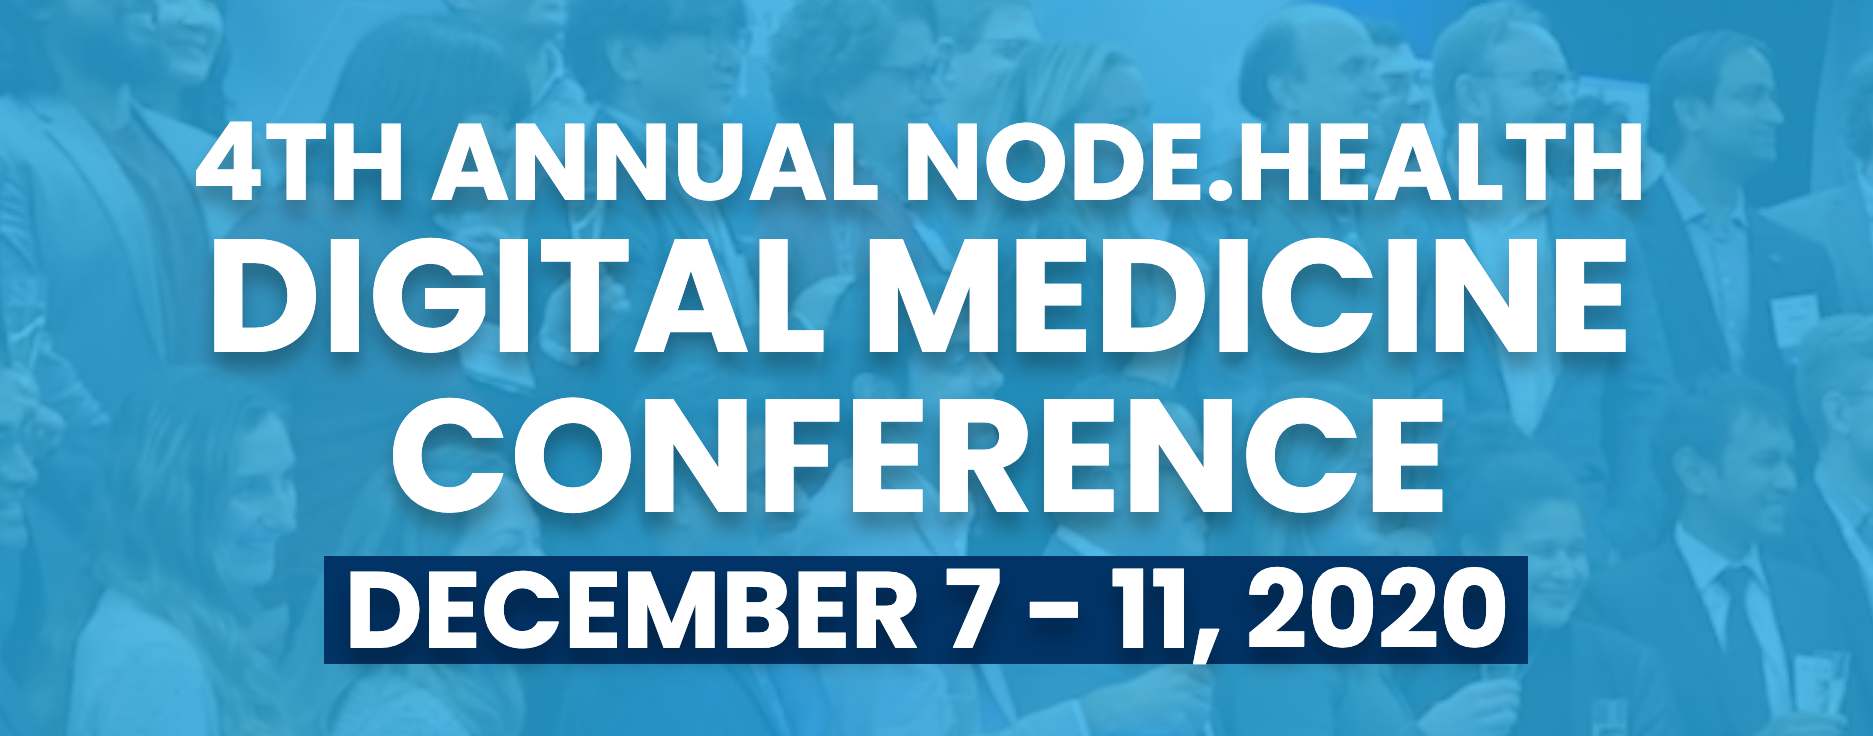 NODE.Health Digital Medicine Conference : December 7-11, 2020